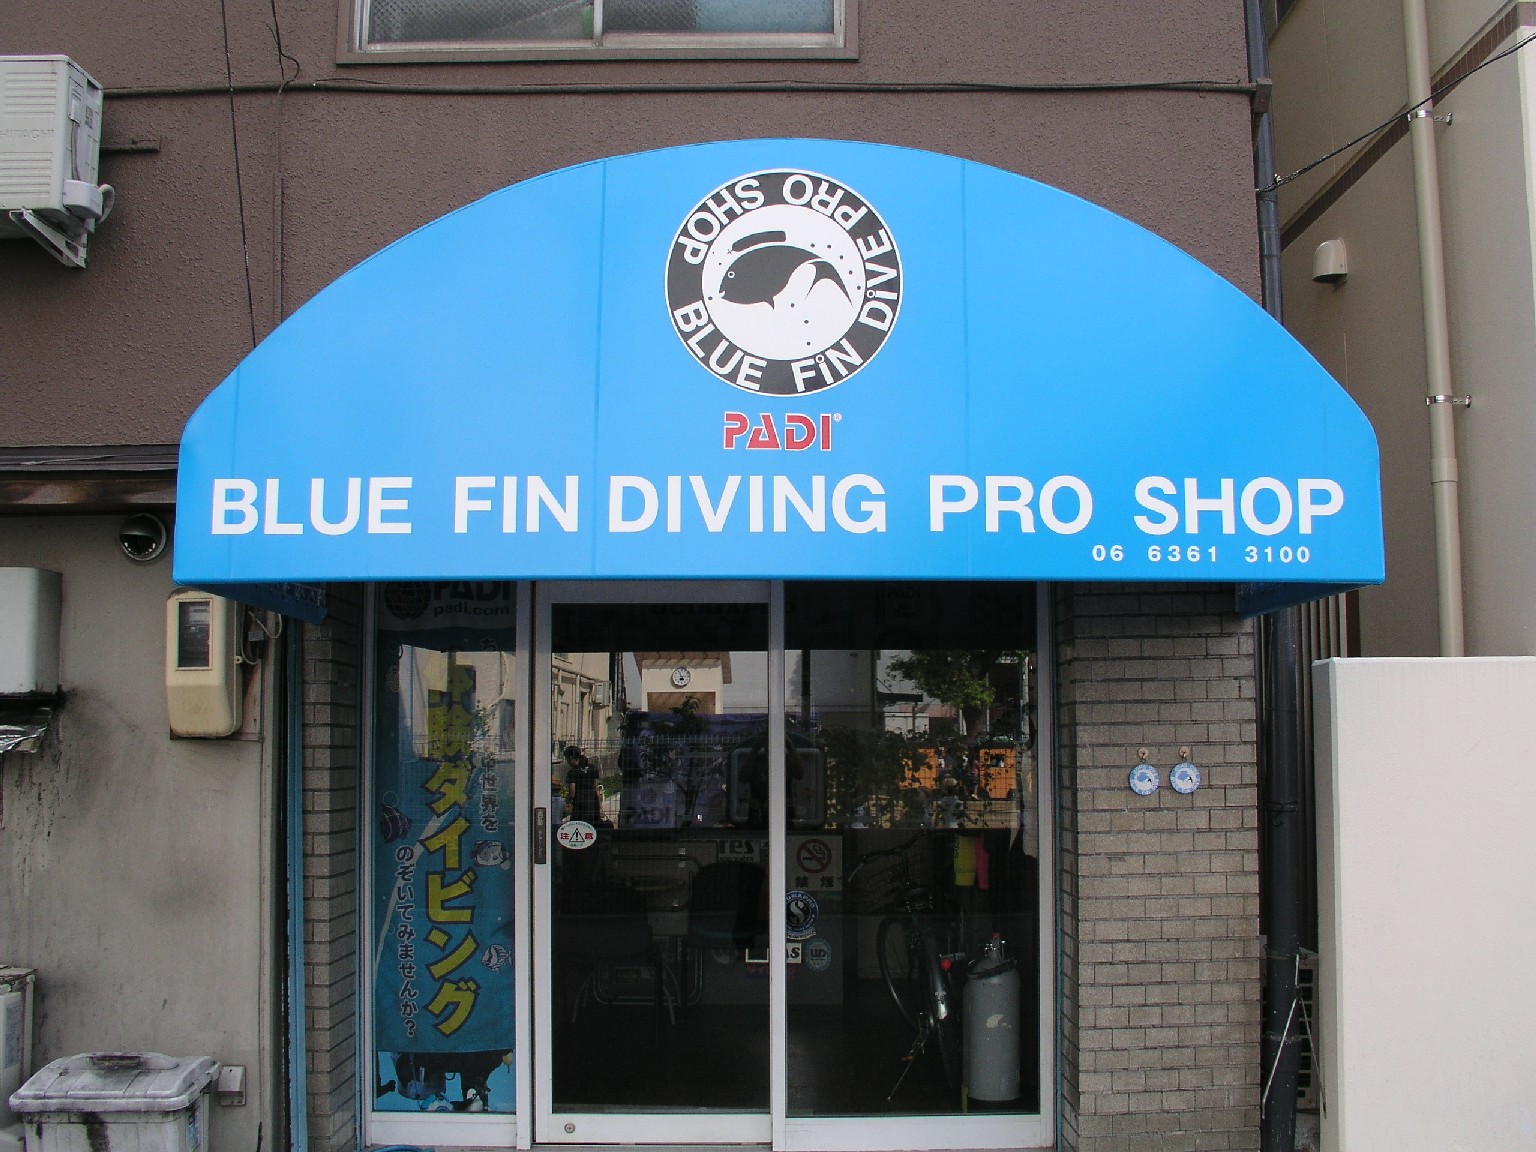 BLUE FIN DIVING PRO SHOP